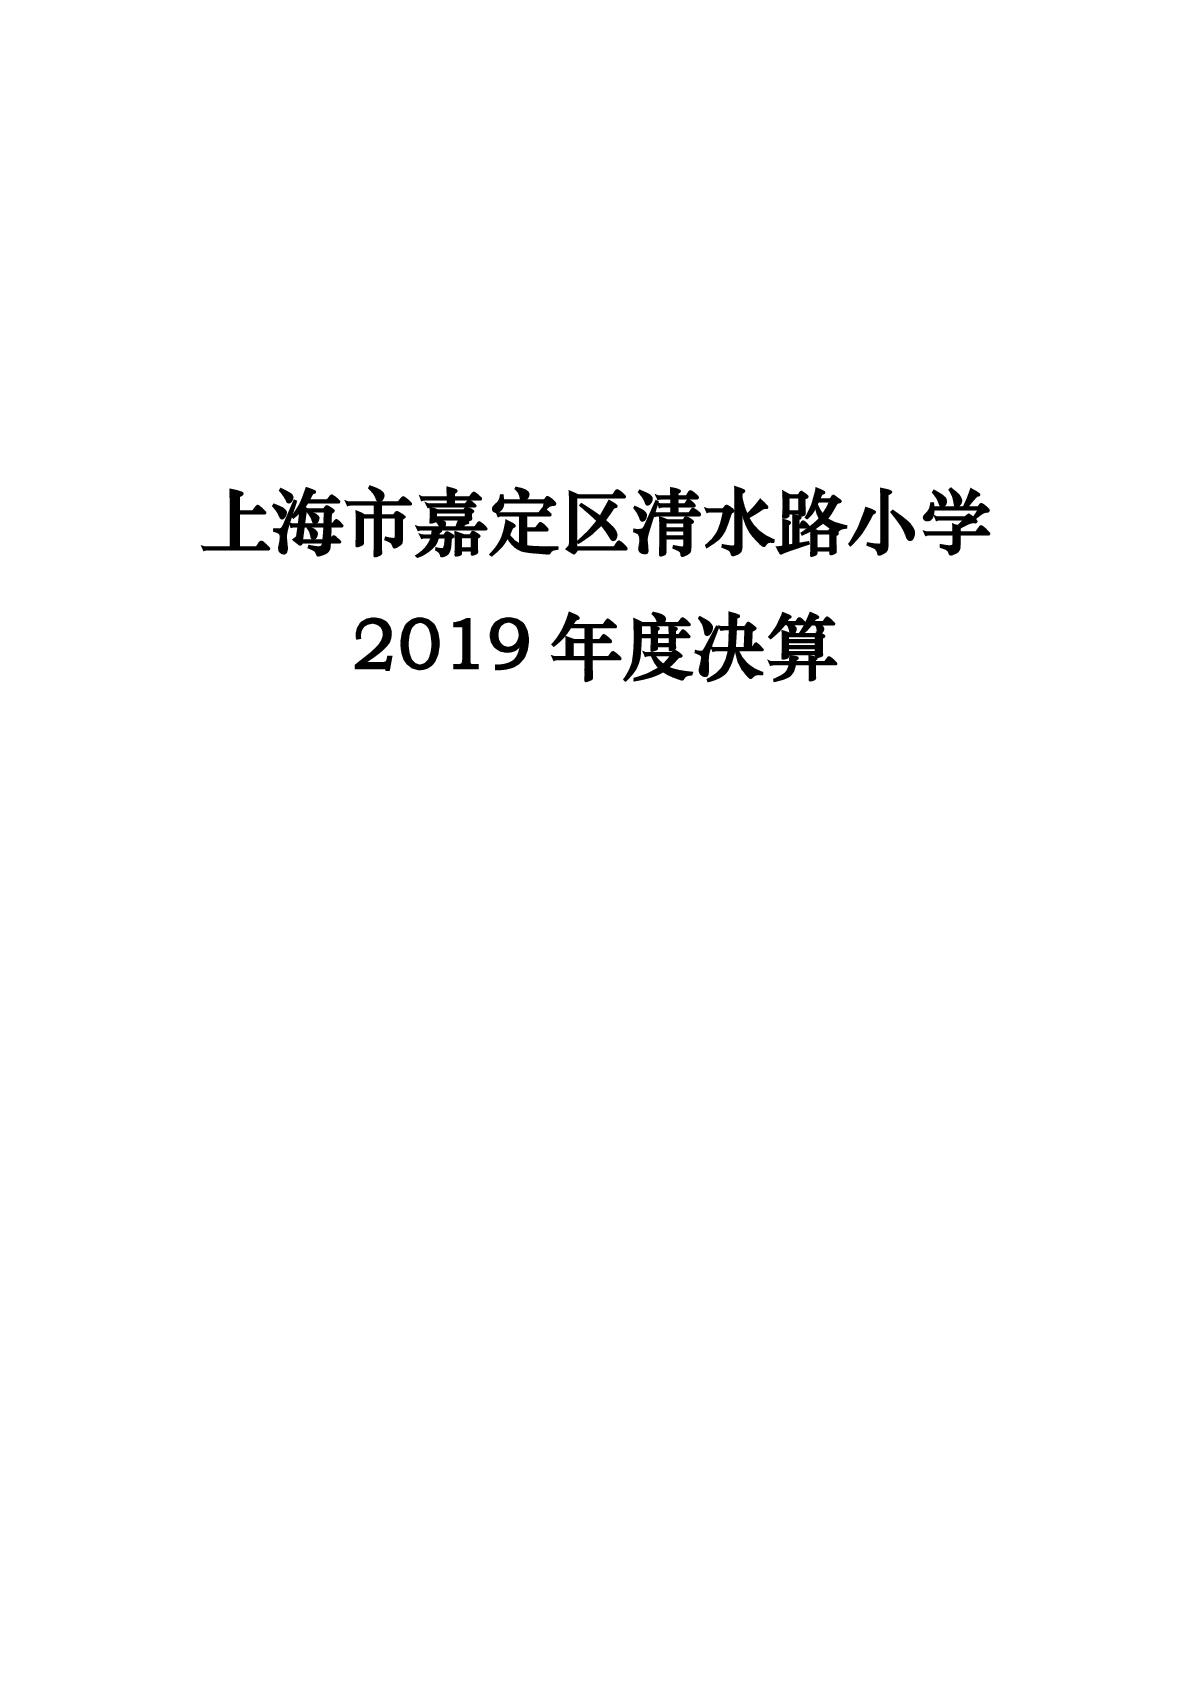 上海市清水路小学2019年度决算-001.jpg